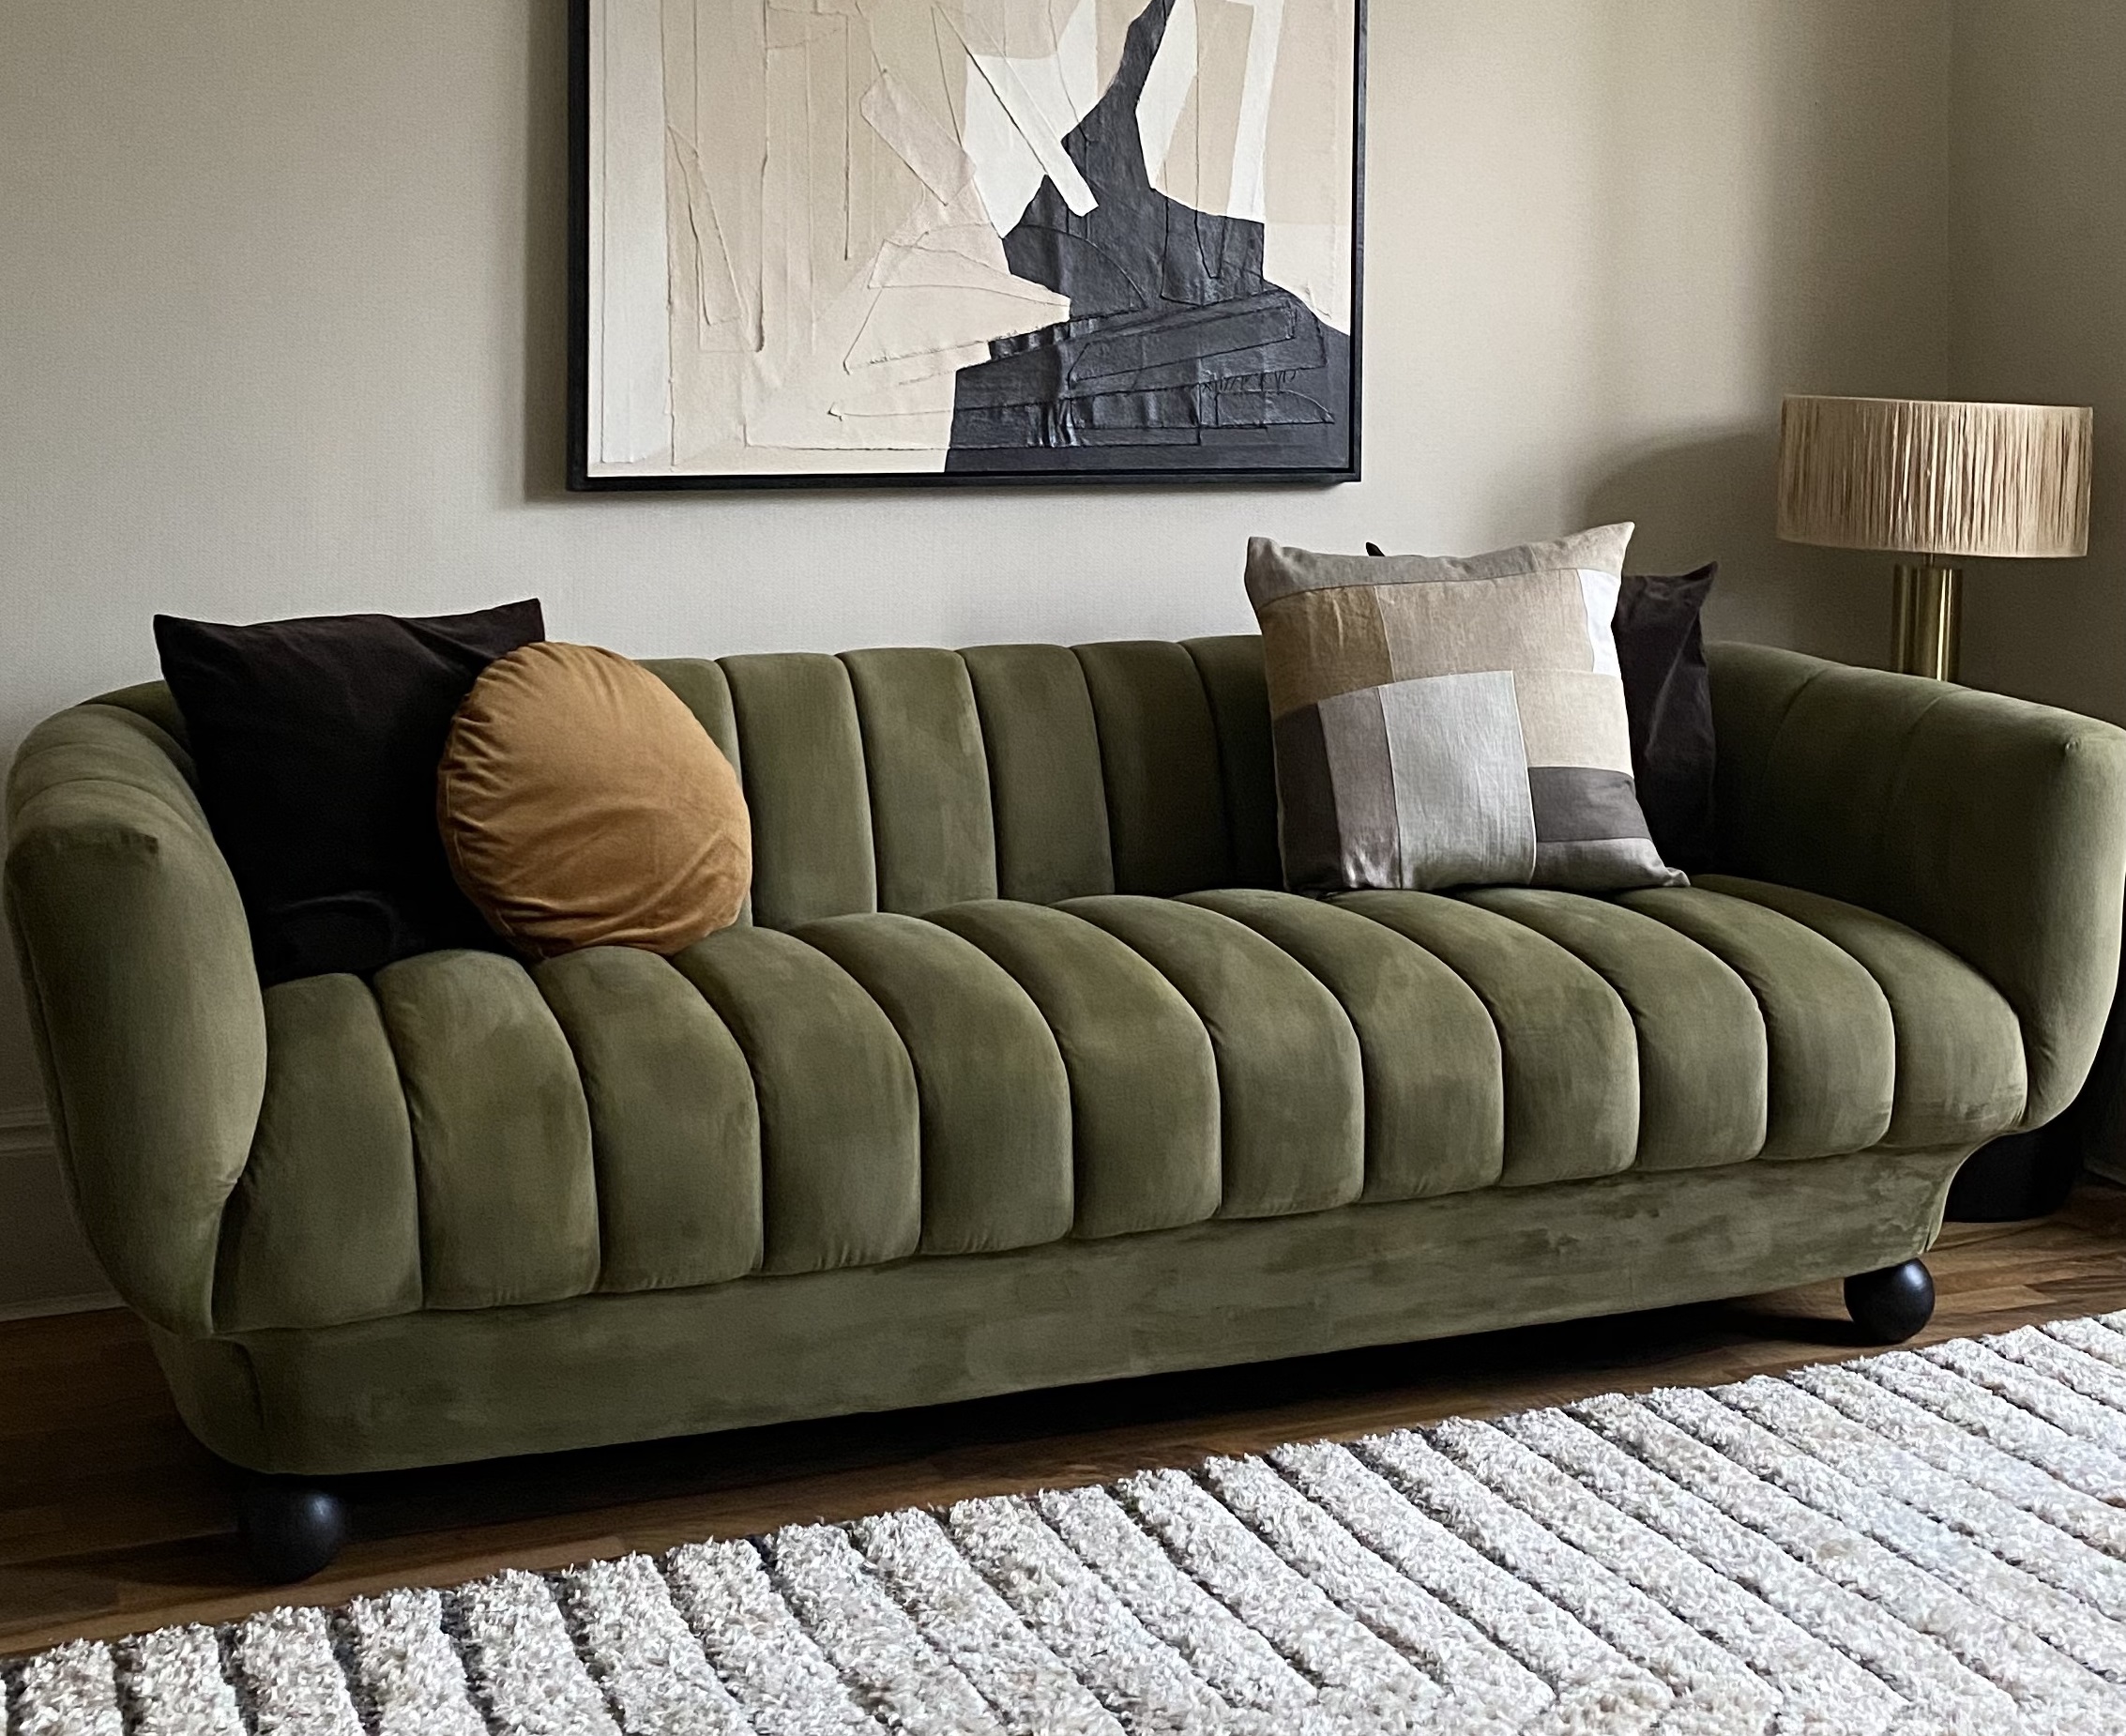 How to paint a velvet sofa – an interior designer explains | Livingetc